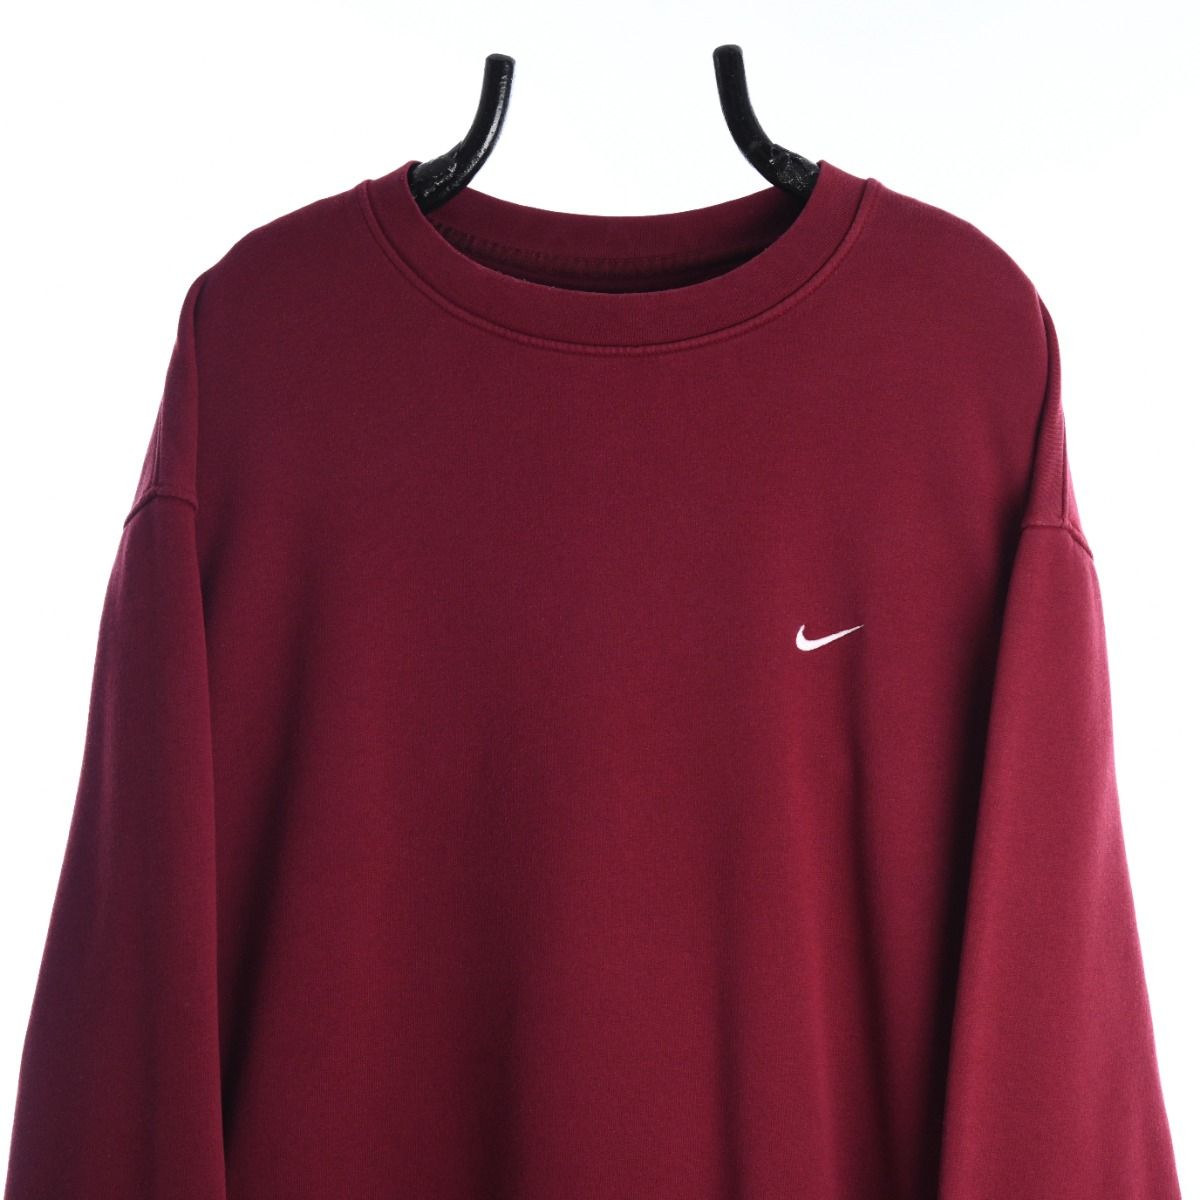 Nike Early 2000s Burgundy Sweatshirt